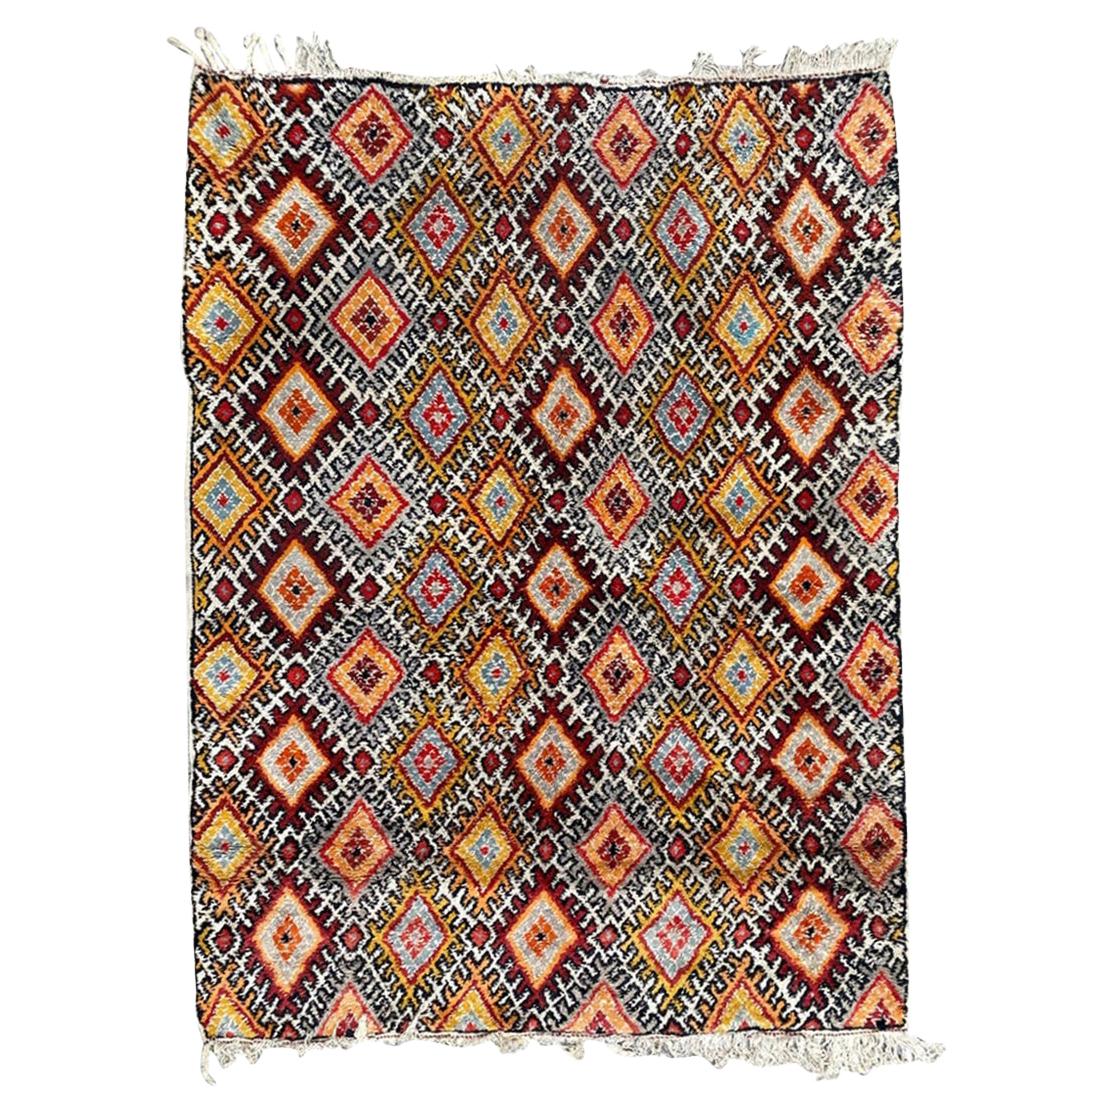 Beau tapis berbere marocain à motifs géométriques